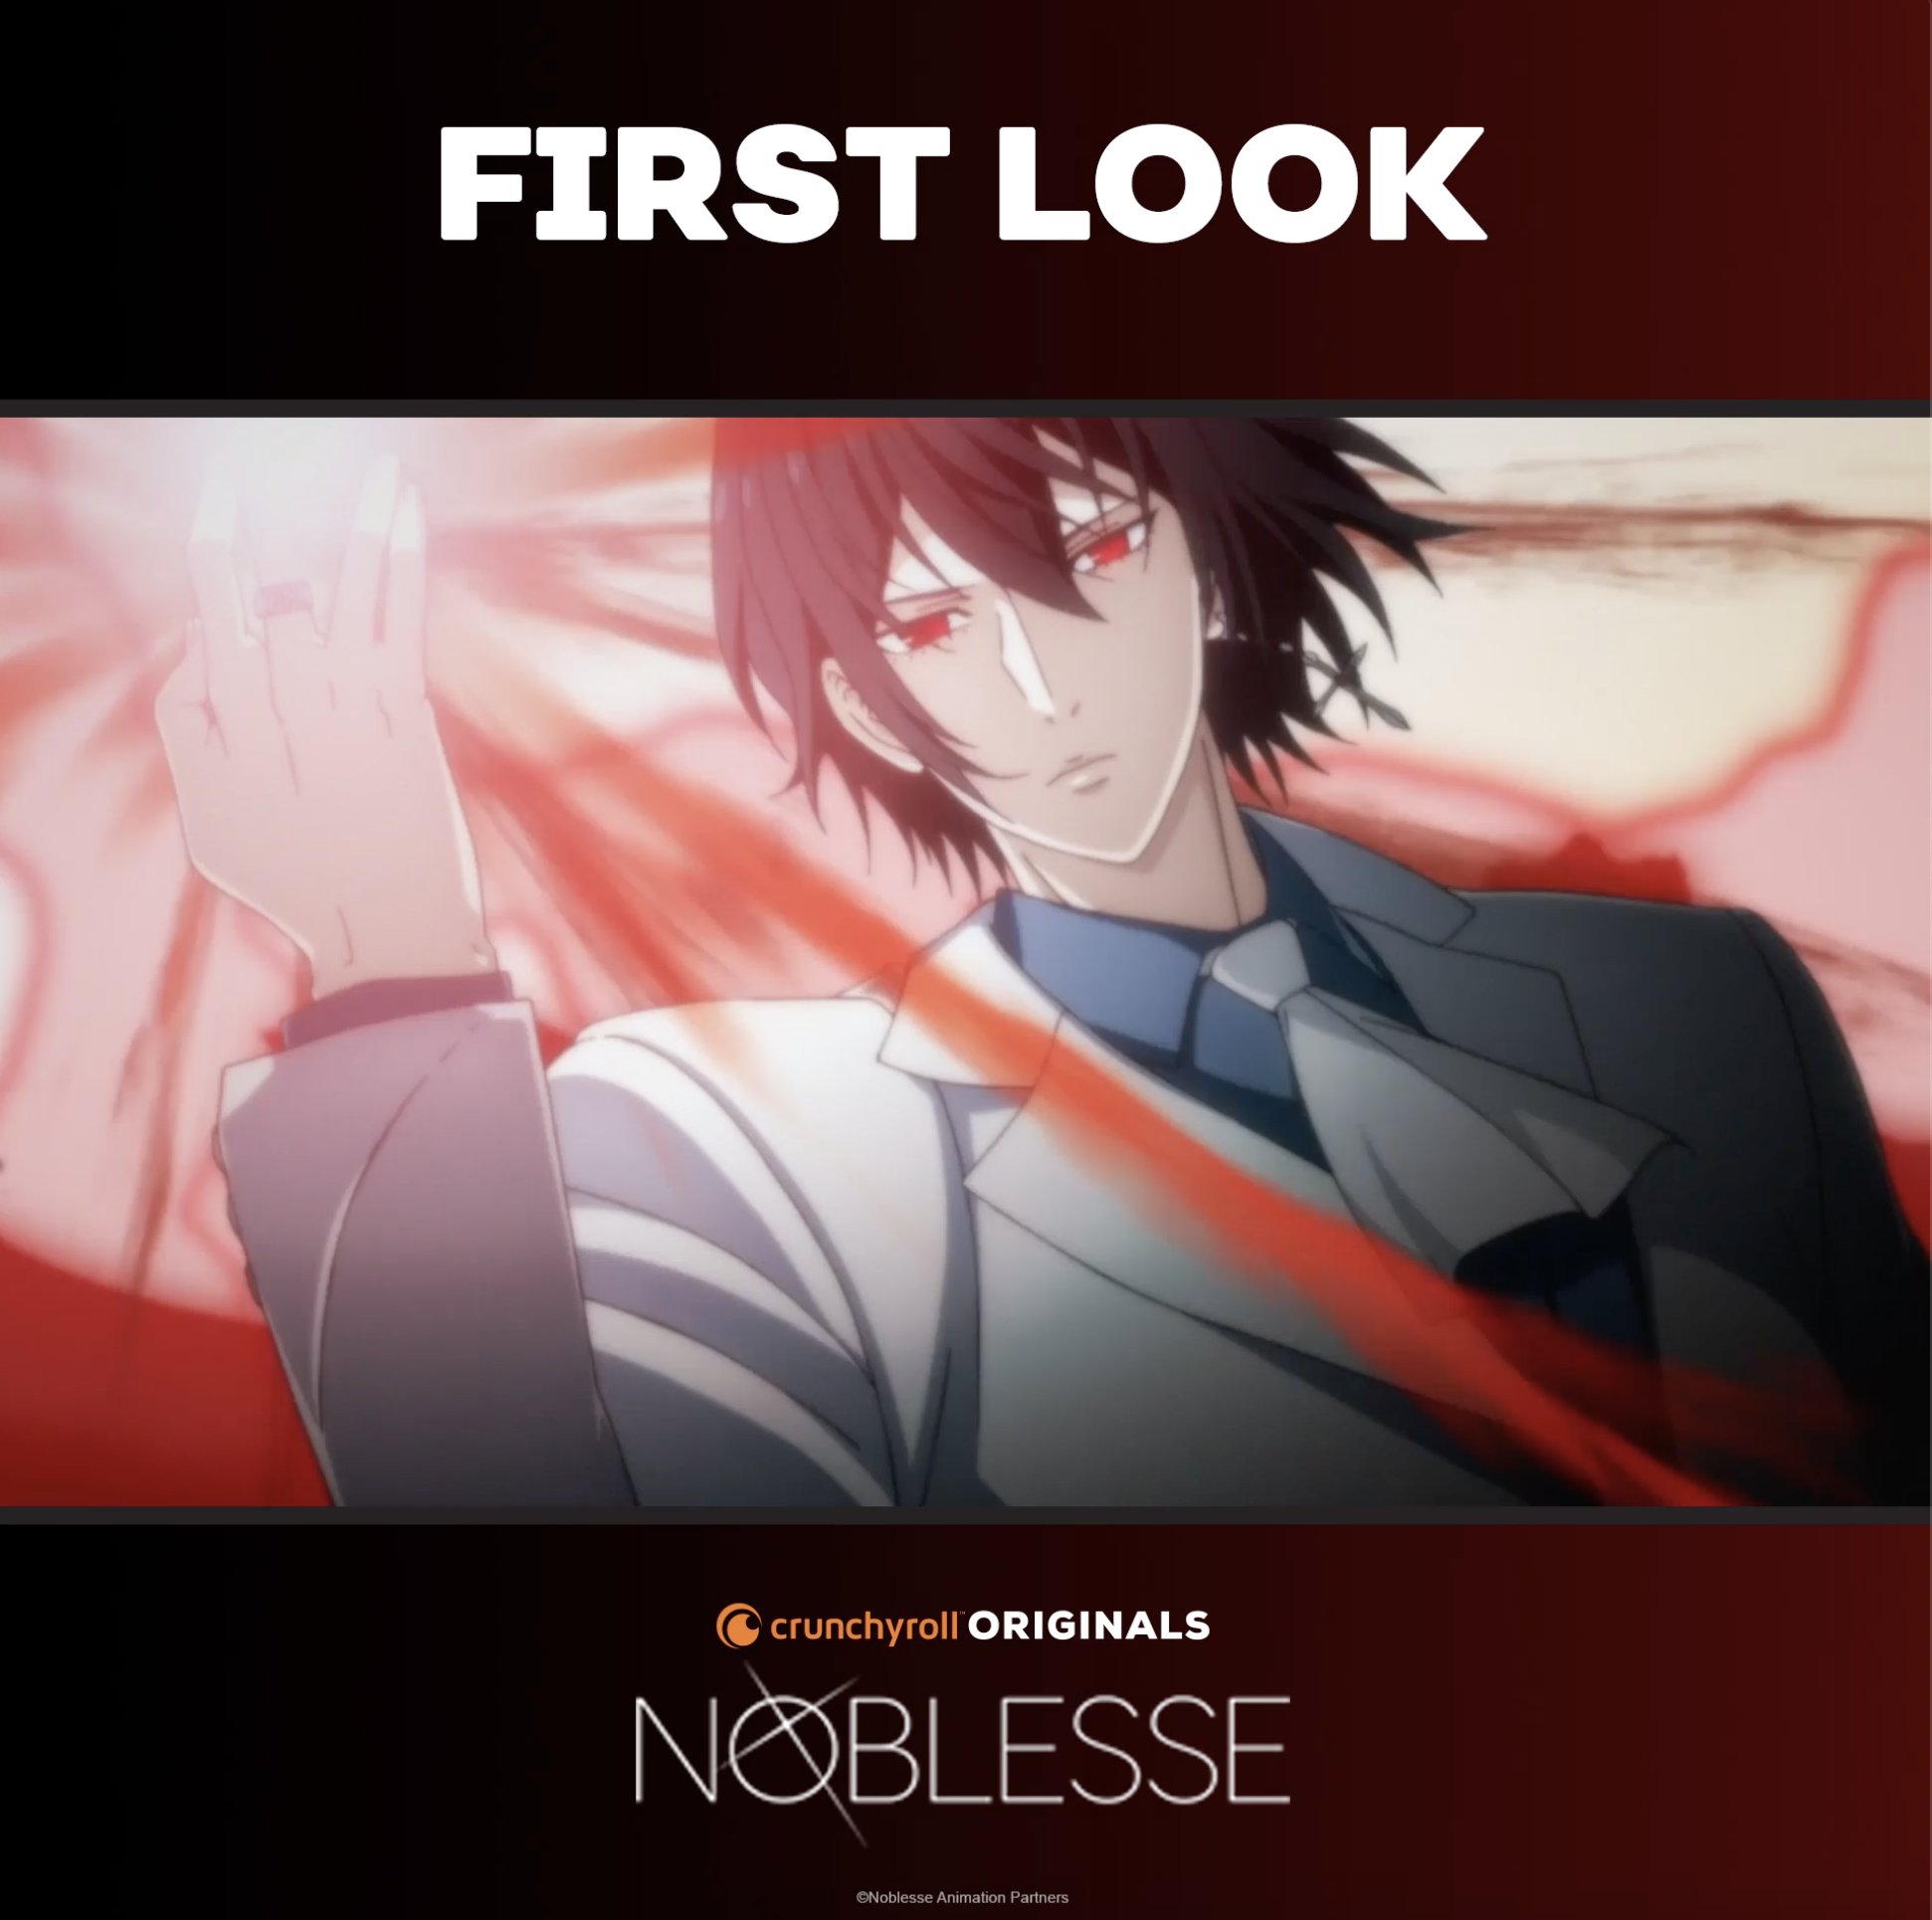 Anime Like Noblesse: Awakening